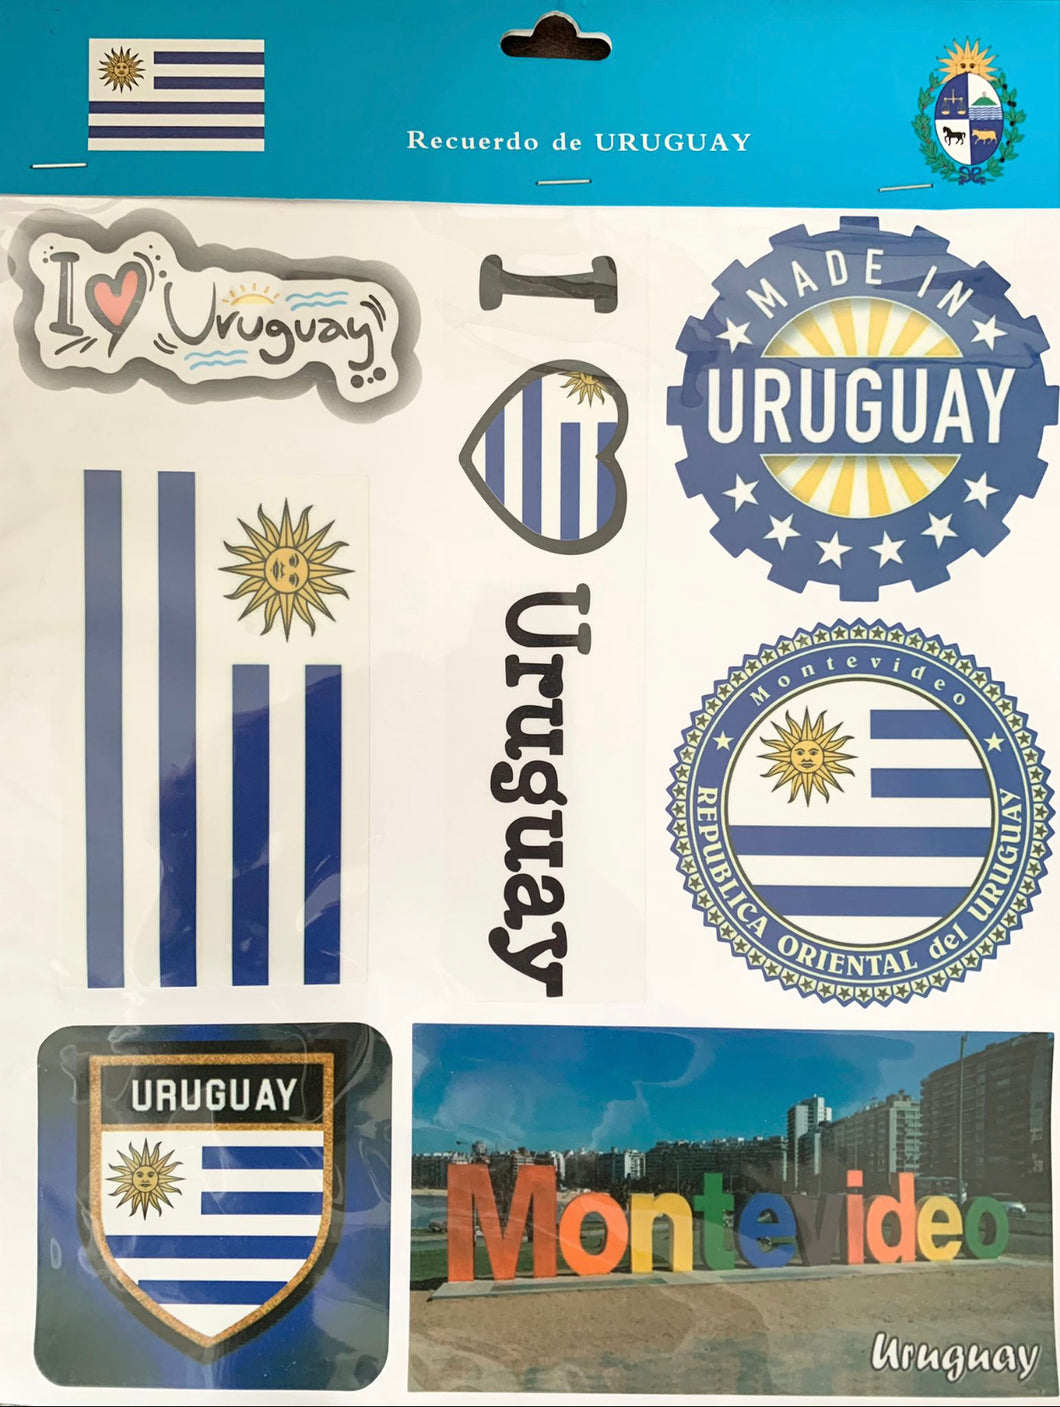 SOUVENIRS - pegotines de Uruguay